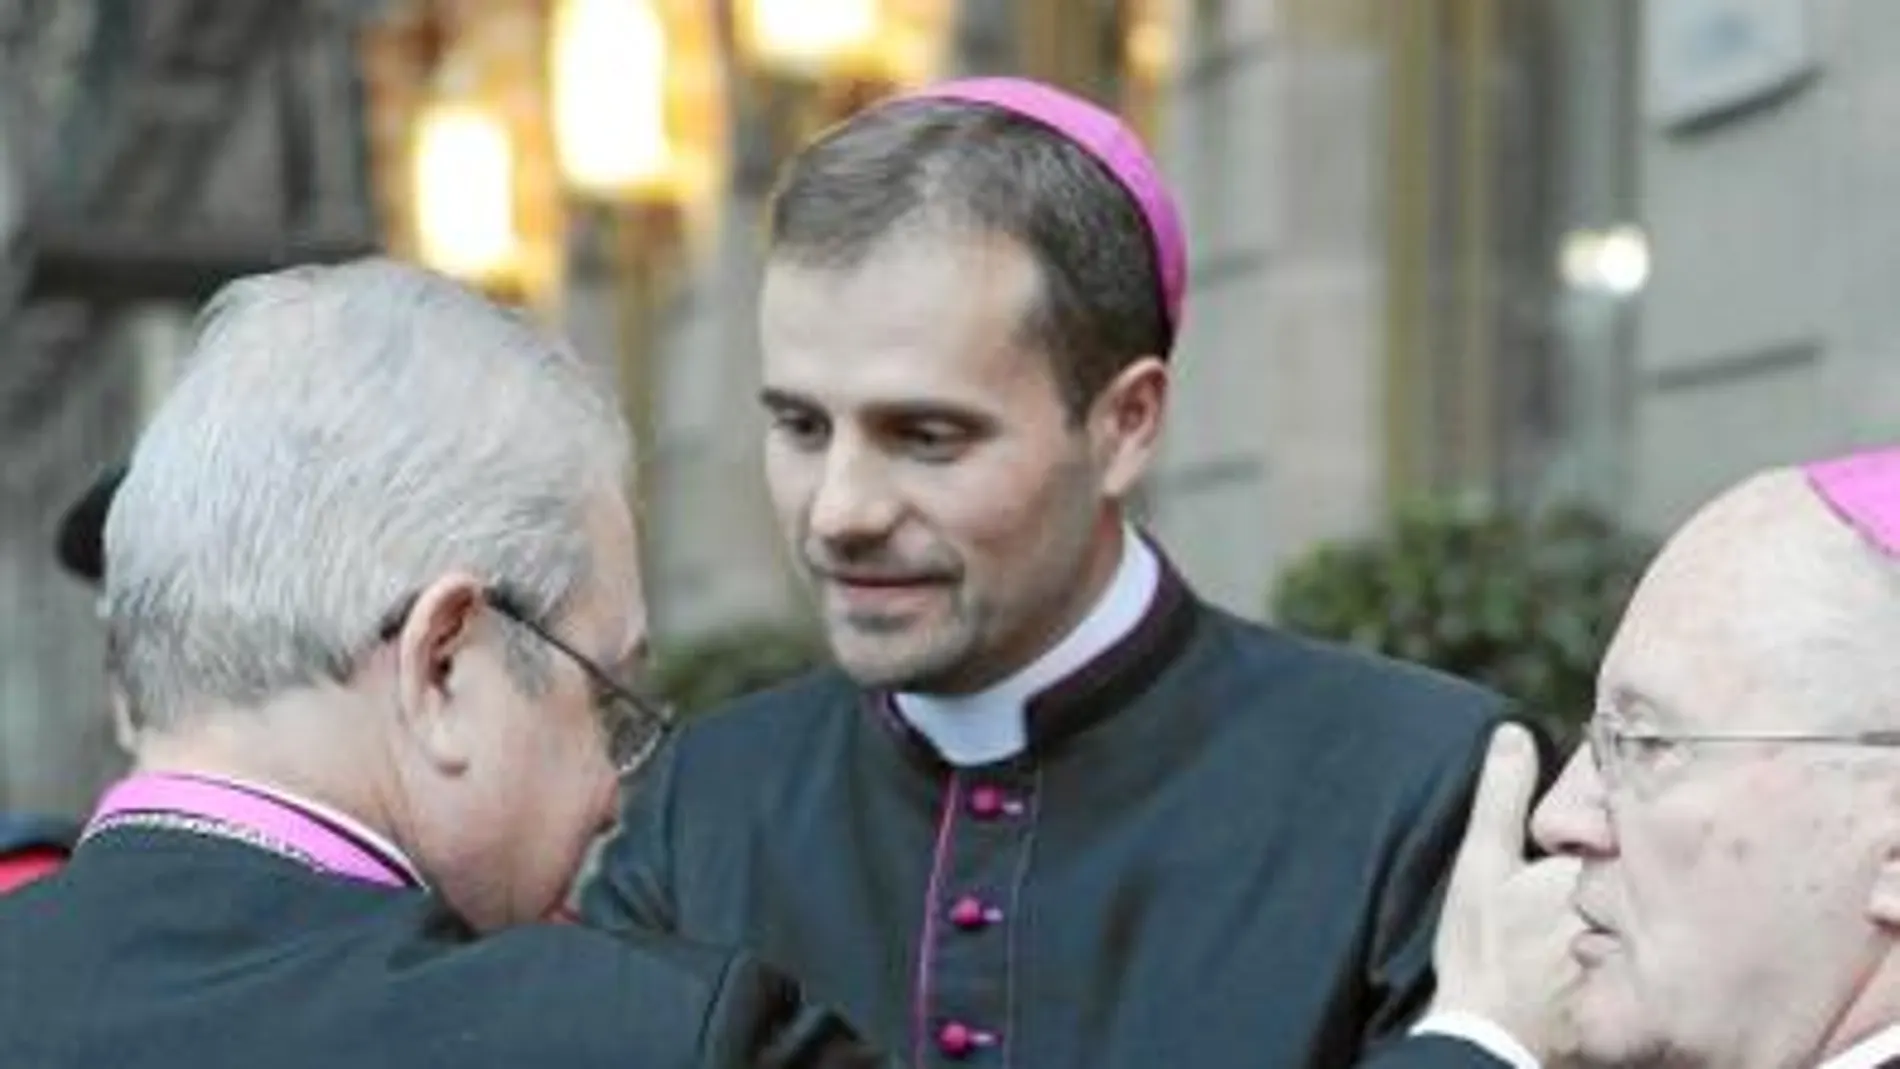 El nuevo obispo Xavier Novell renovó completamente la diócesis de Solsona al crear la Escuela de Formación para Laicos con el fin de evangelizar a los más jóvenes